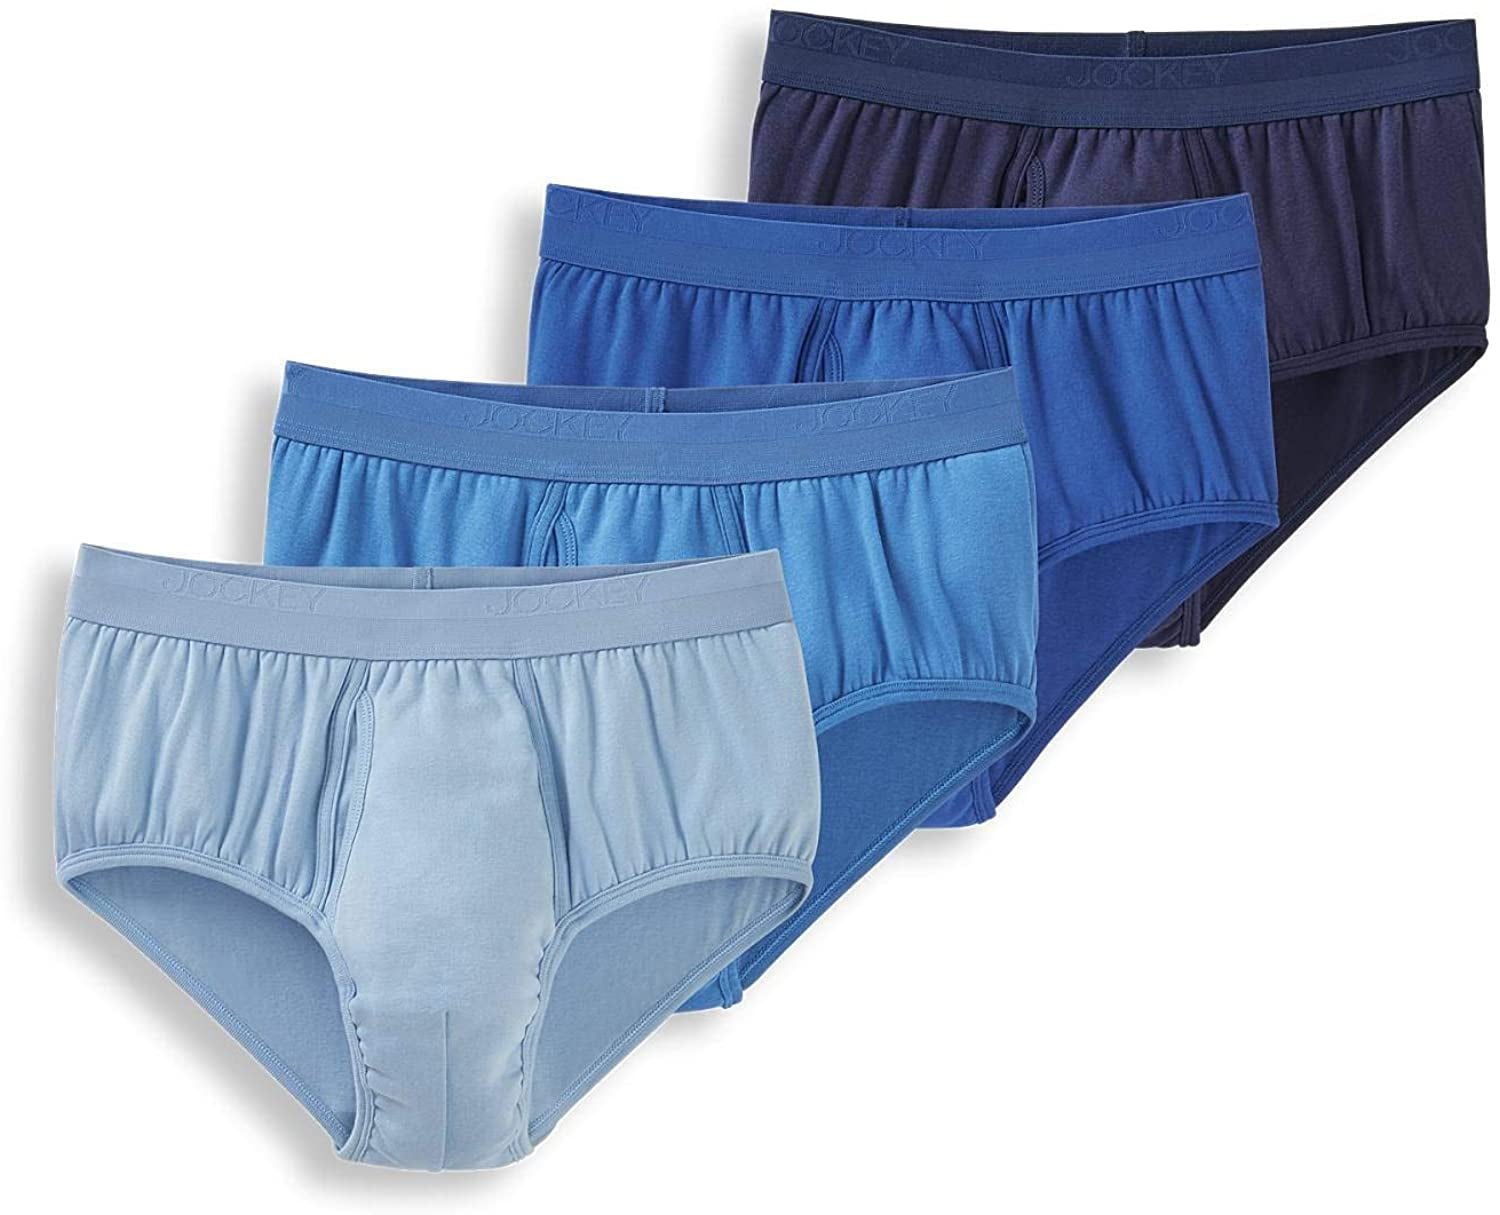 4 x Womens Jockey Parisienne Cotton Marle Boyleg Underwear Briefs Ink Blue